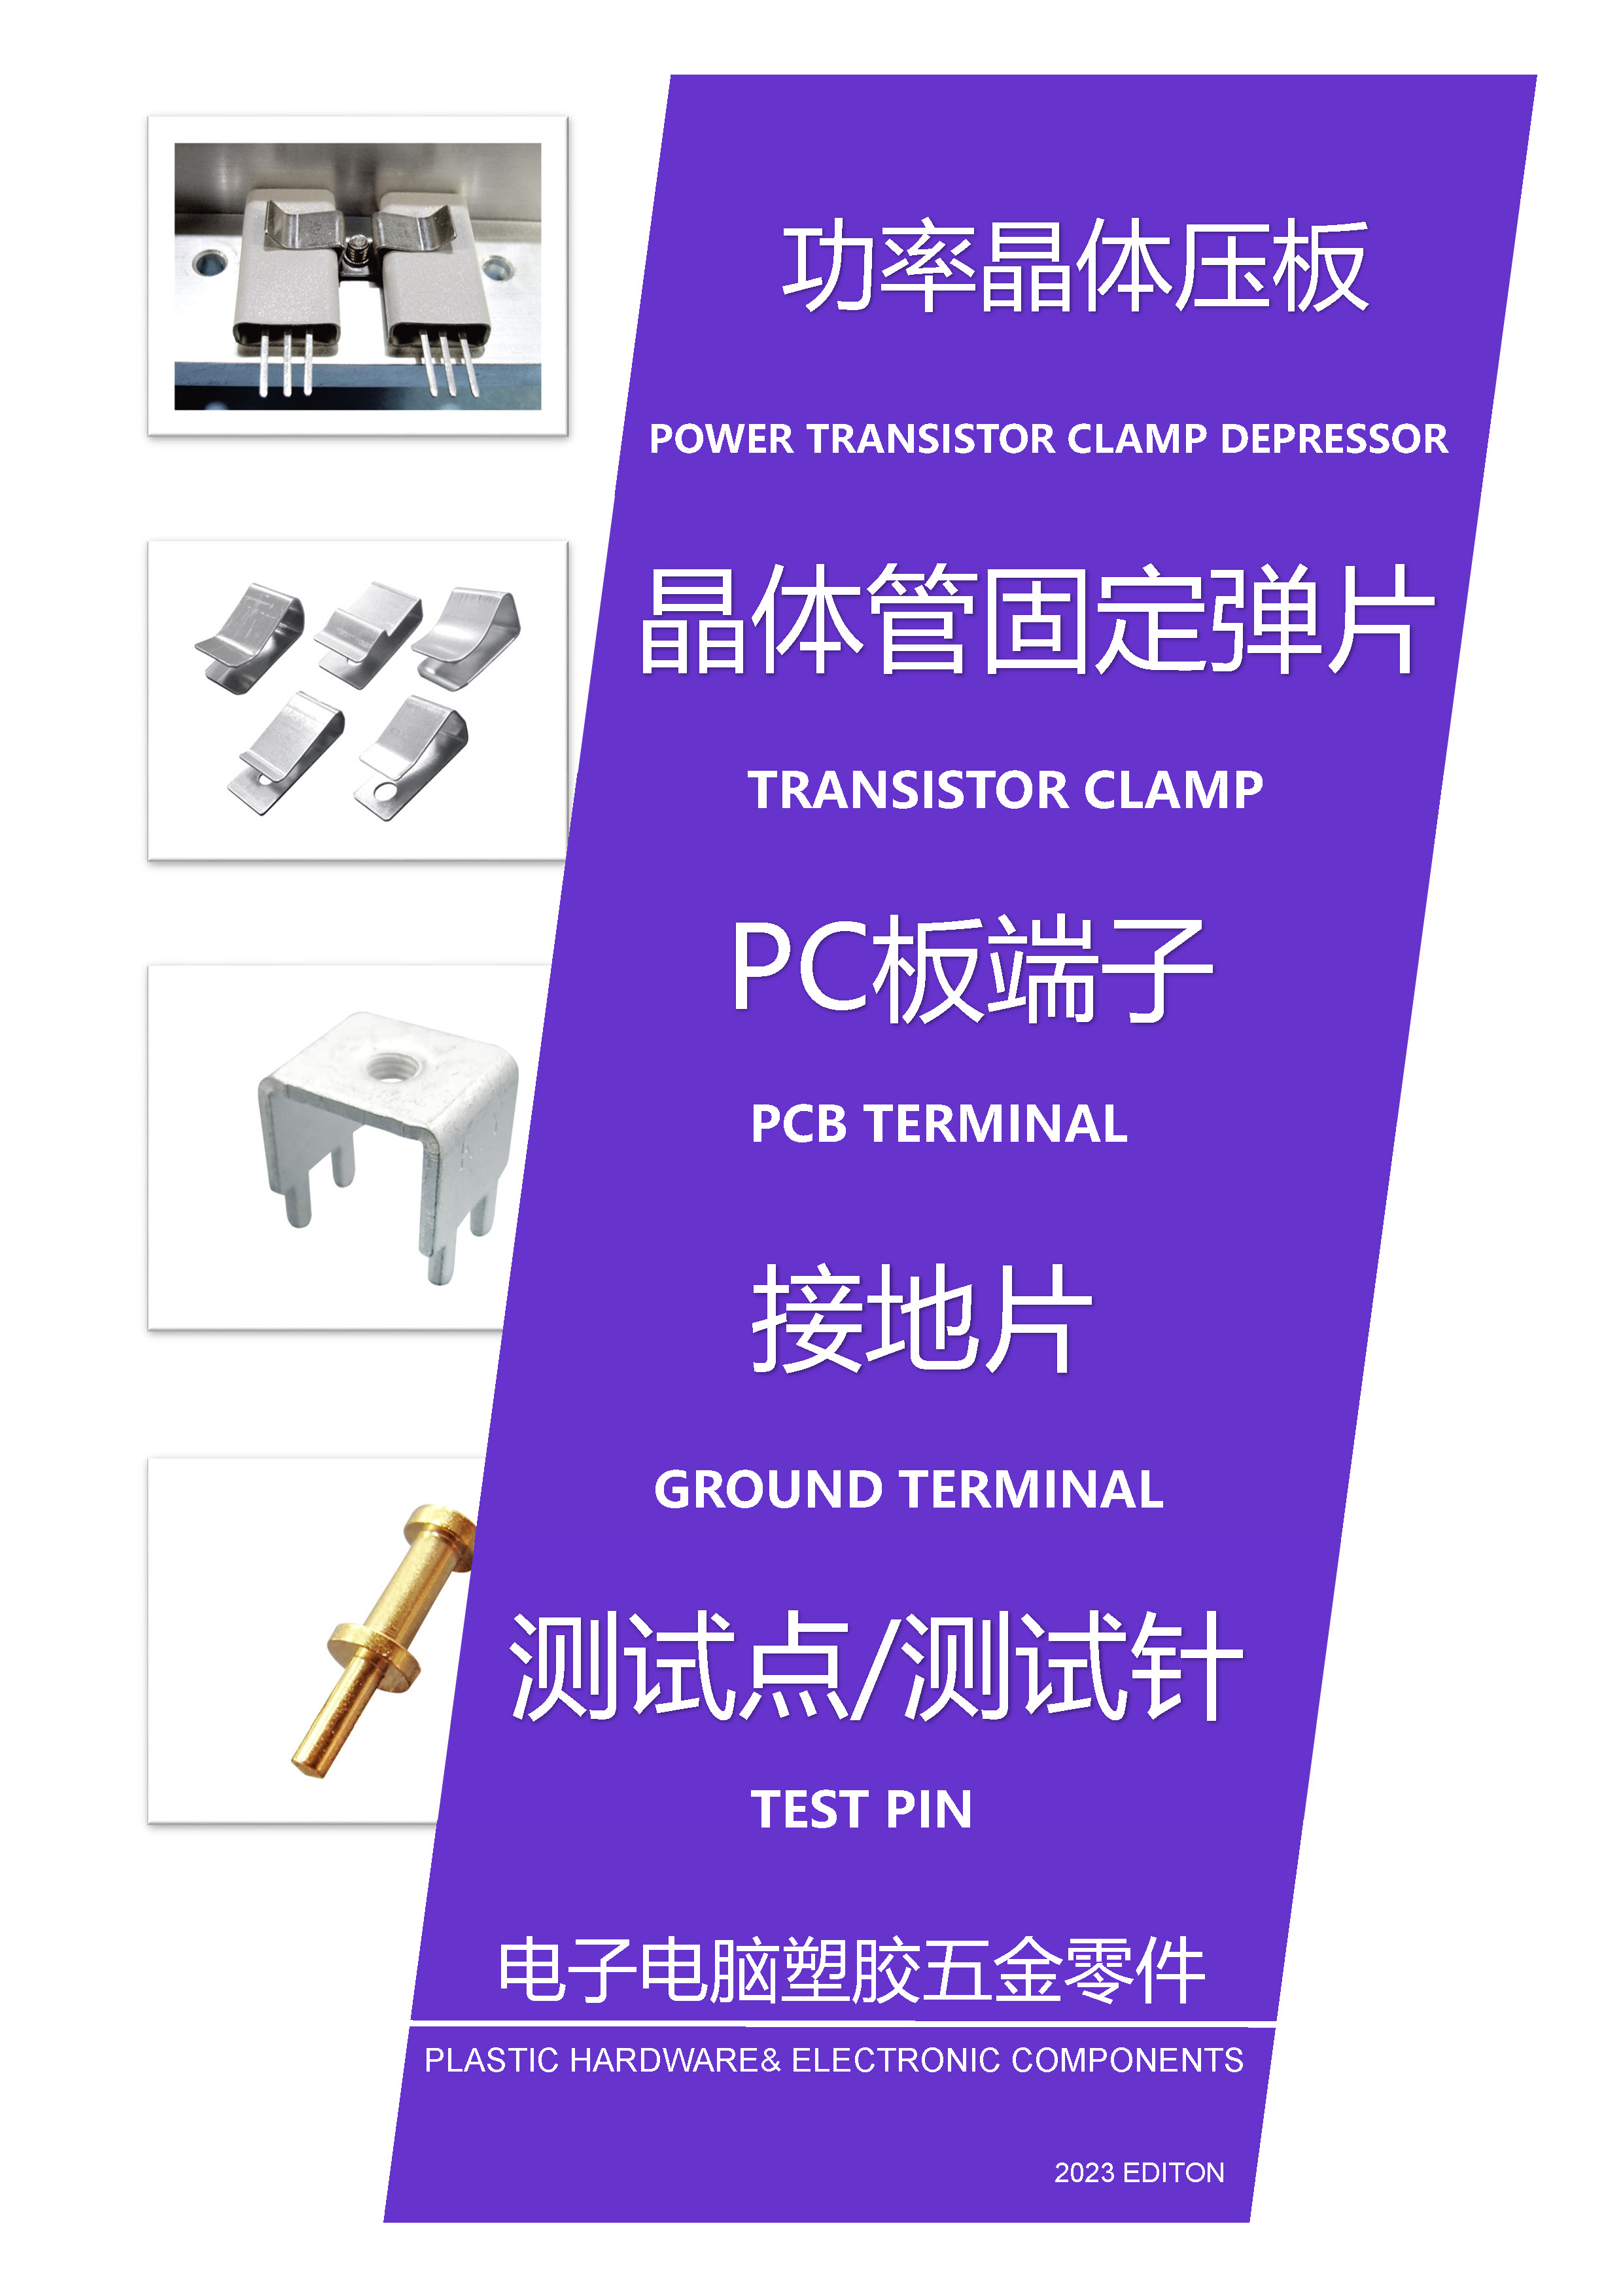 PC端子/测试点/测试针/接地片/功率晶体压板/晶体管固定弹片